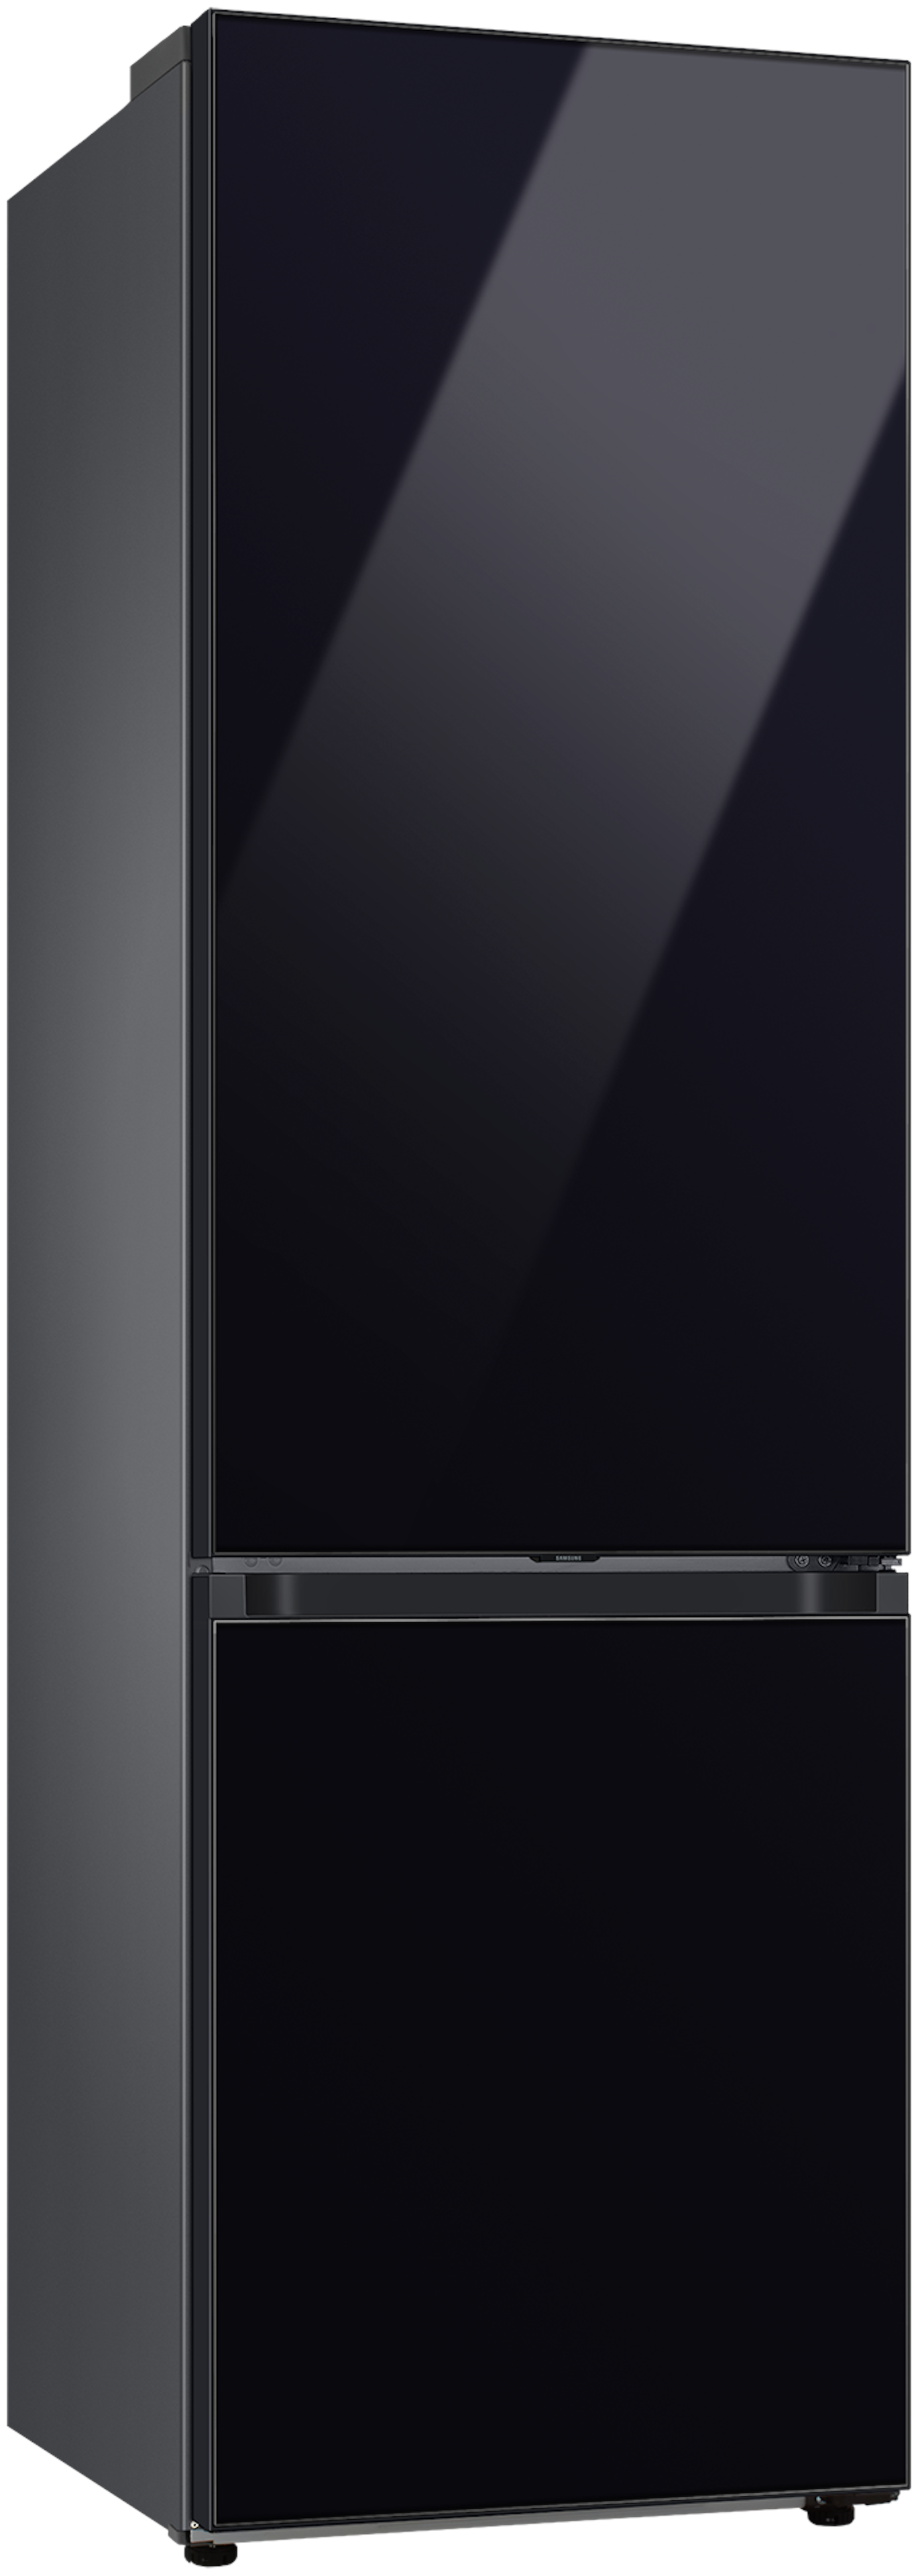 Samsung RB38C7B6B22/EF vrijstaand koelkast afbeelding 5